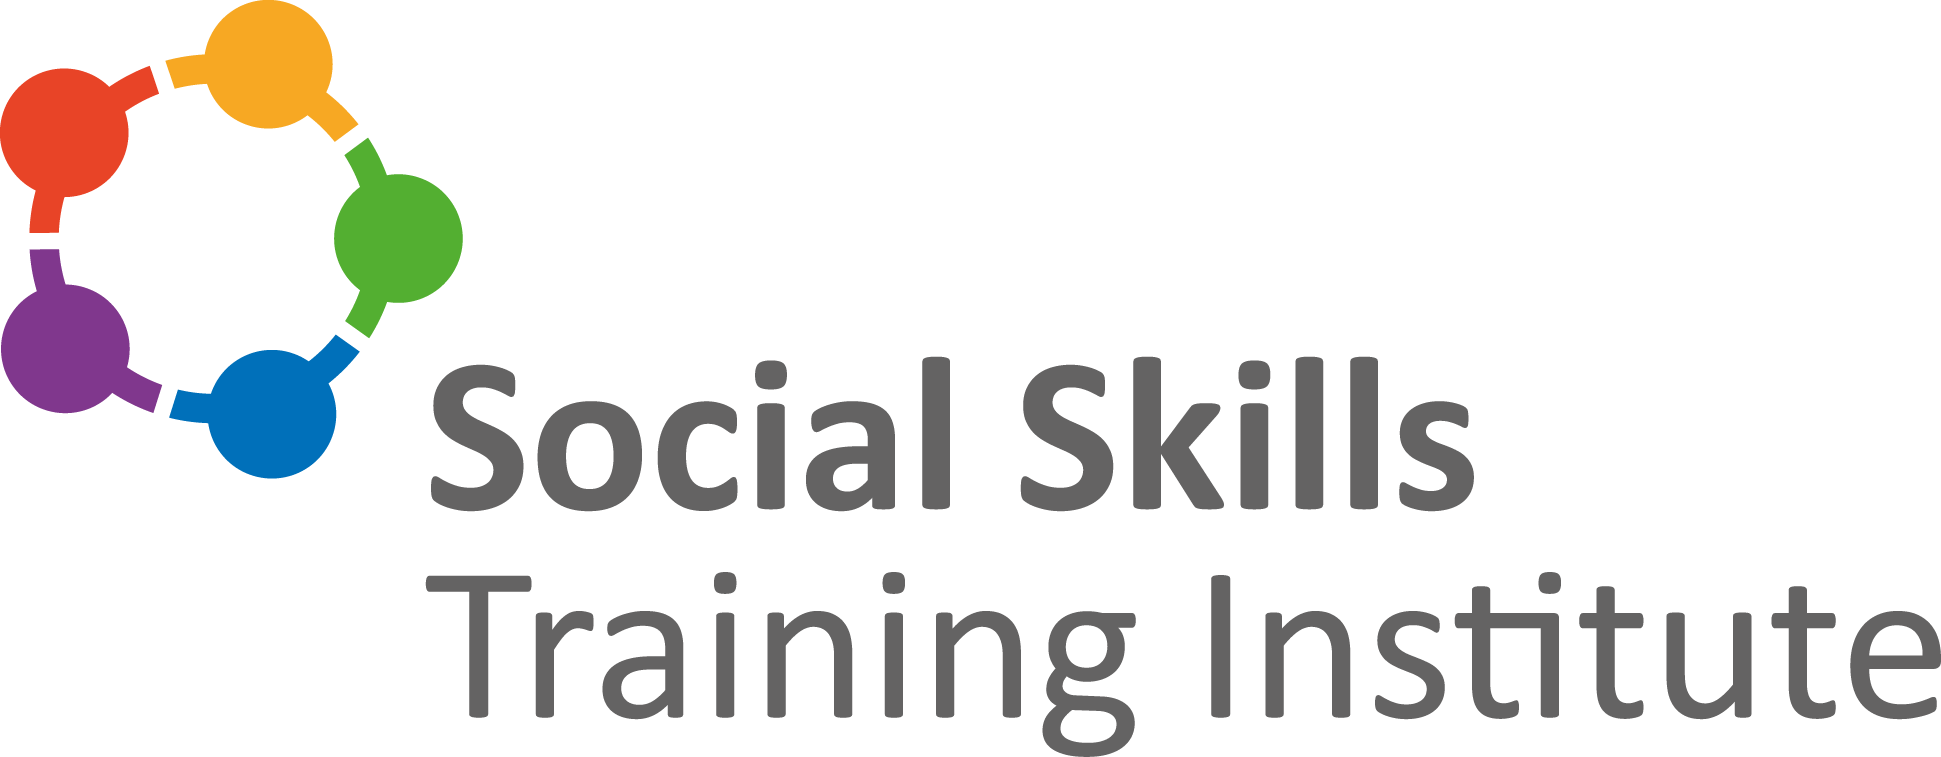 Social Skills Training Institute